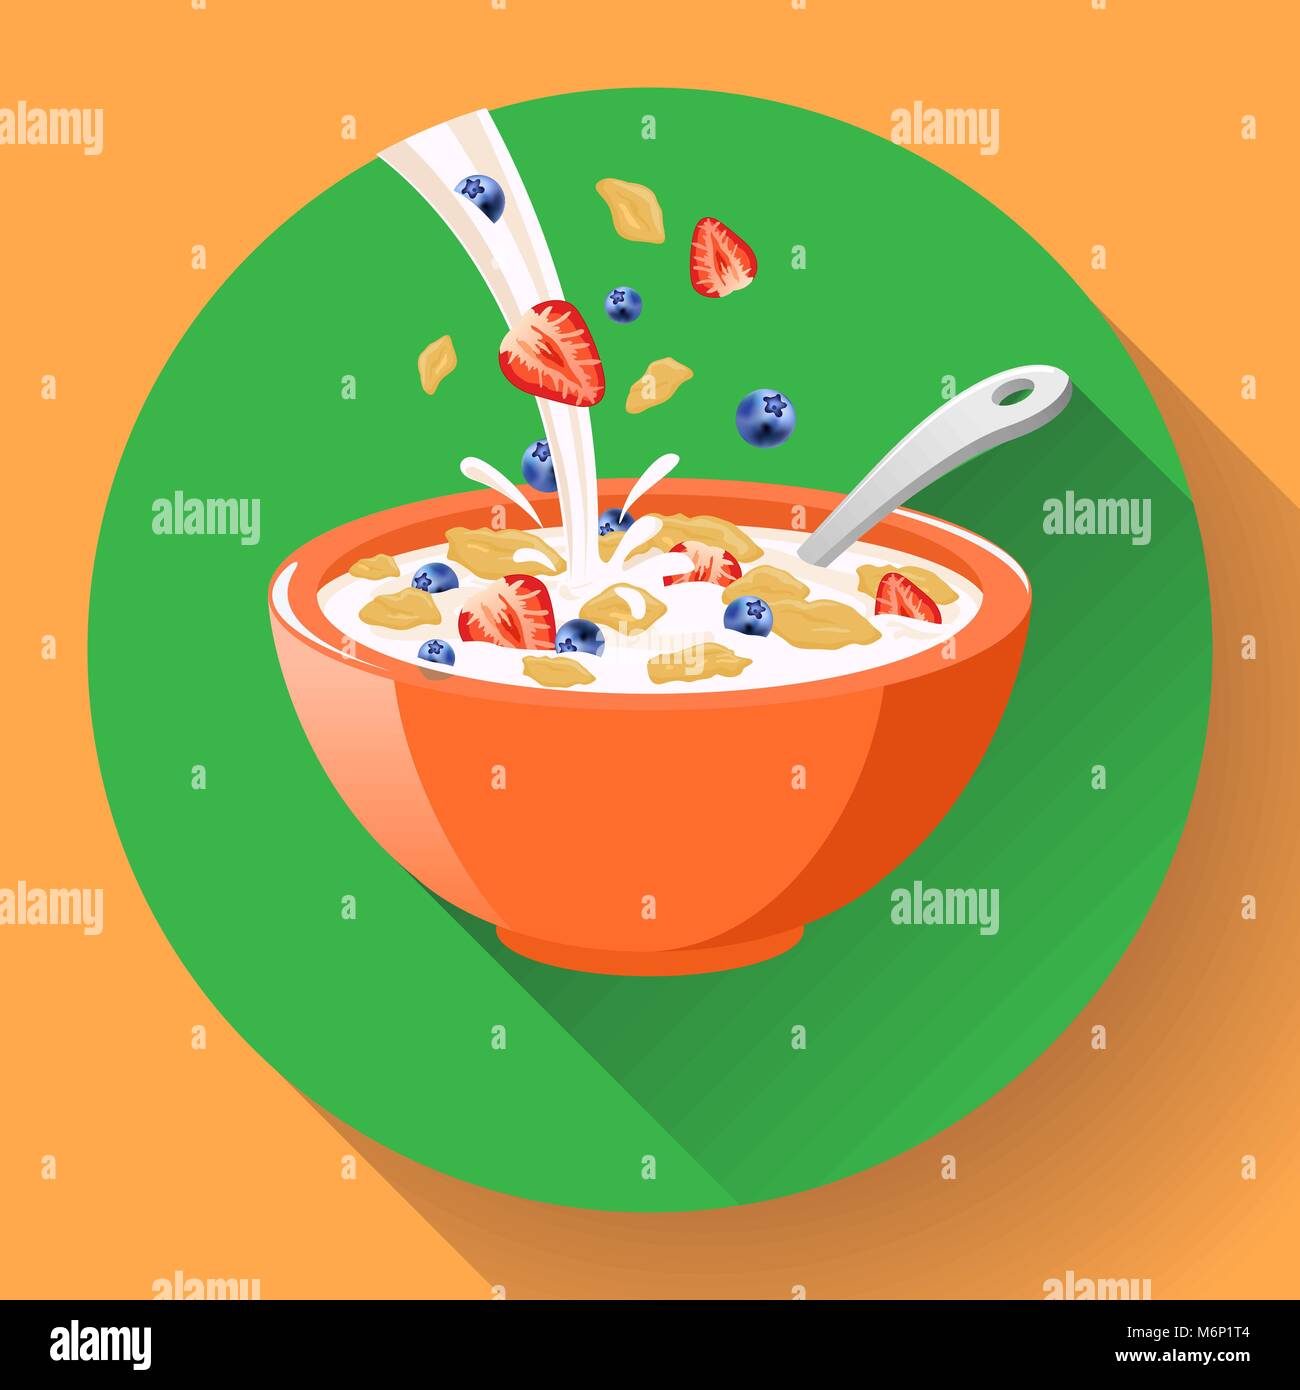 Ciotole contenenti diversi tipi di cereali per la colazione Foto stock -  Alamy